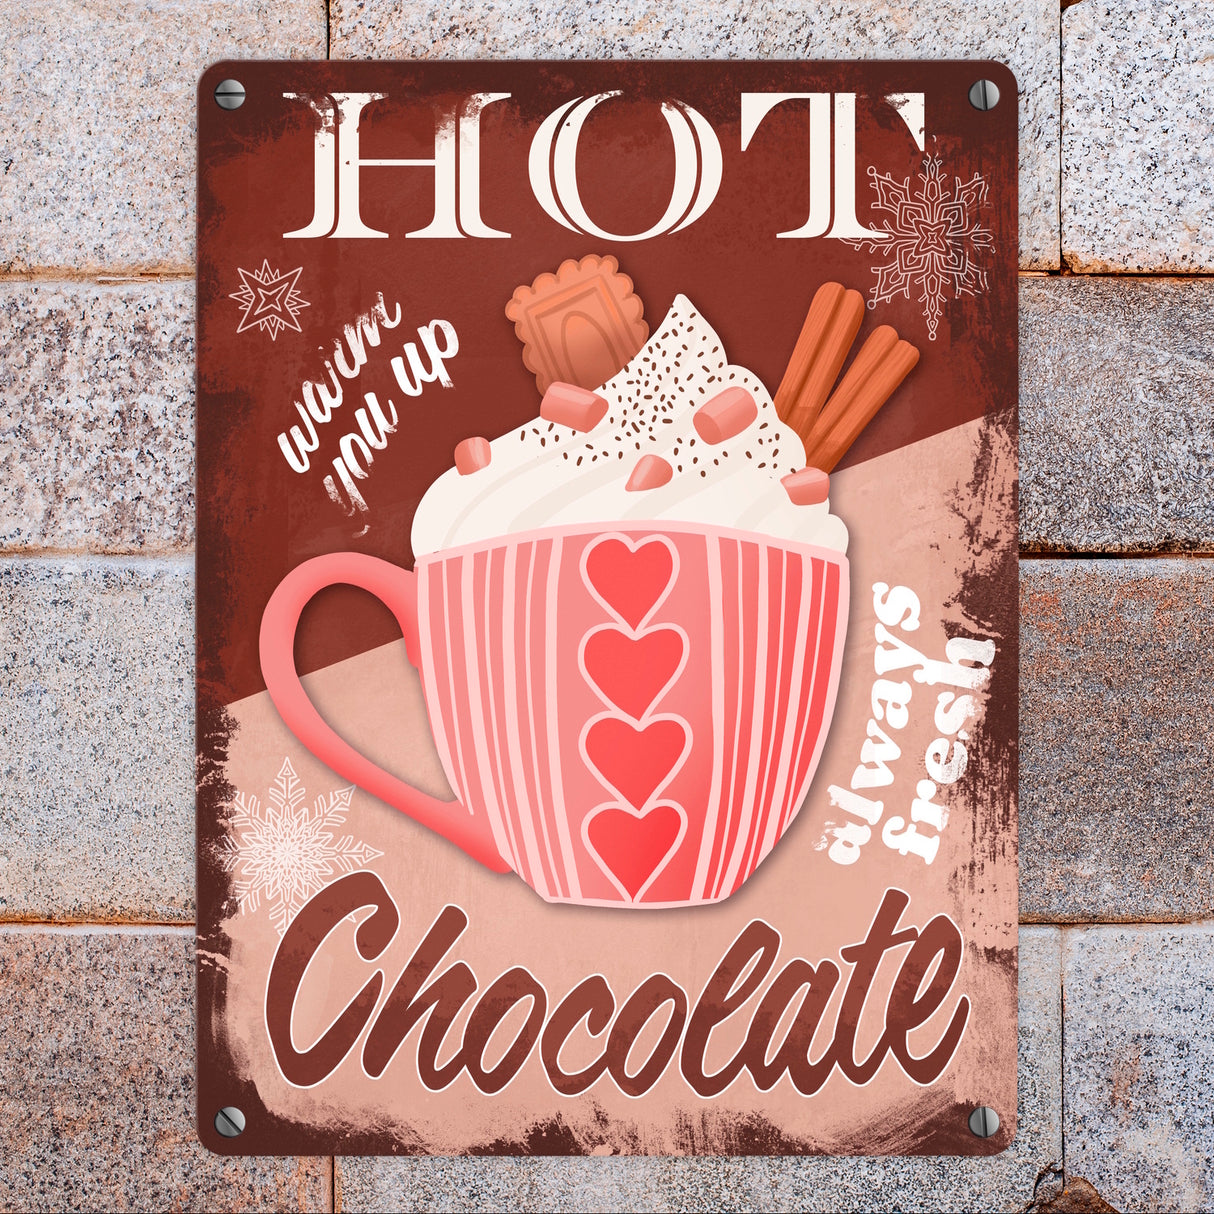 Hot Chocolate dekoratives Metallschild mit heißer Schokolade in braun